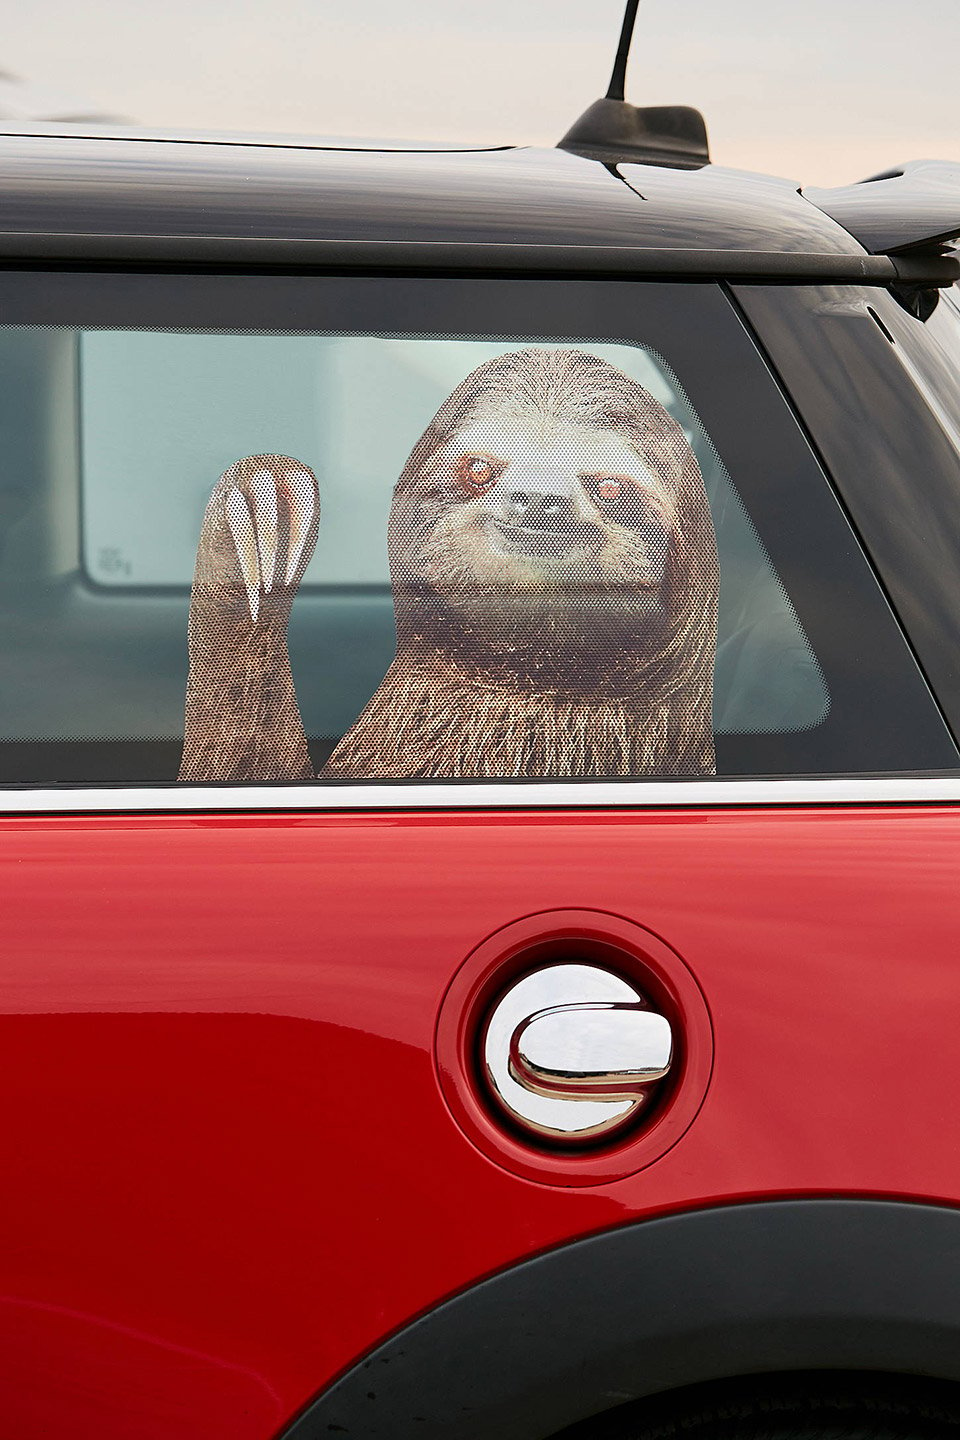 Sloth Car Window Decal